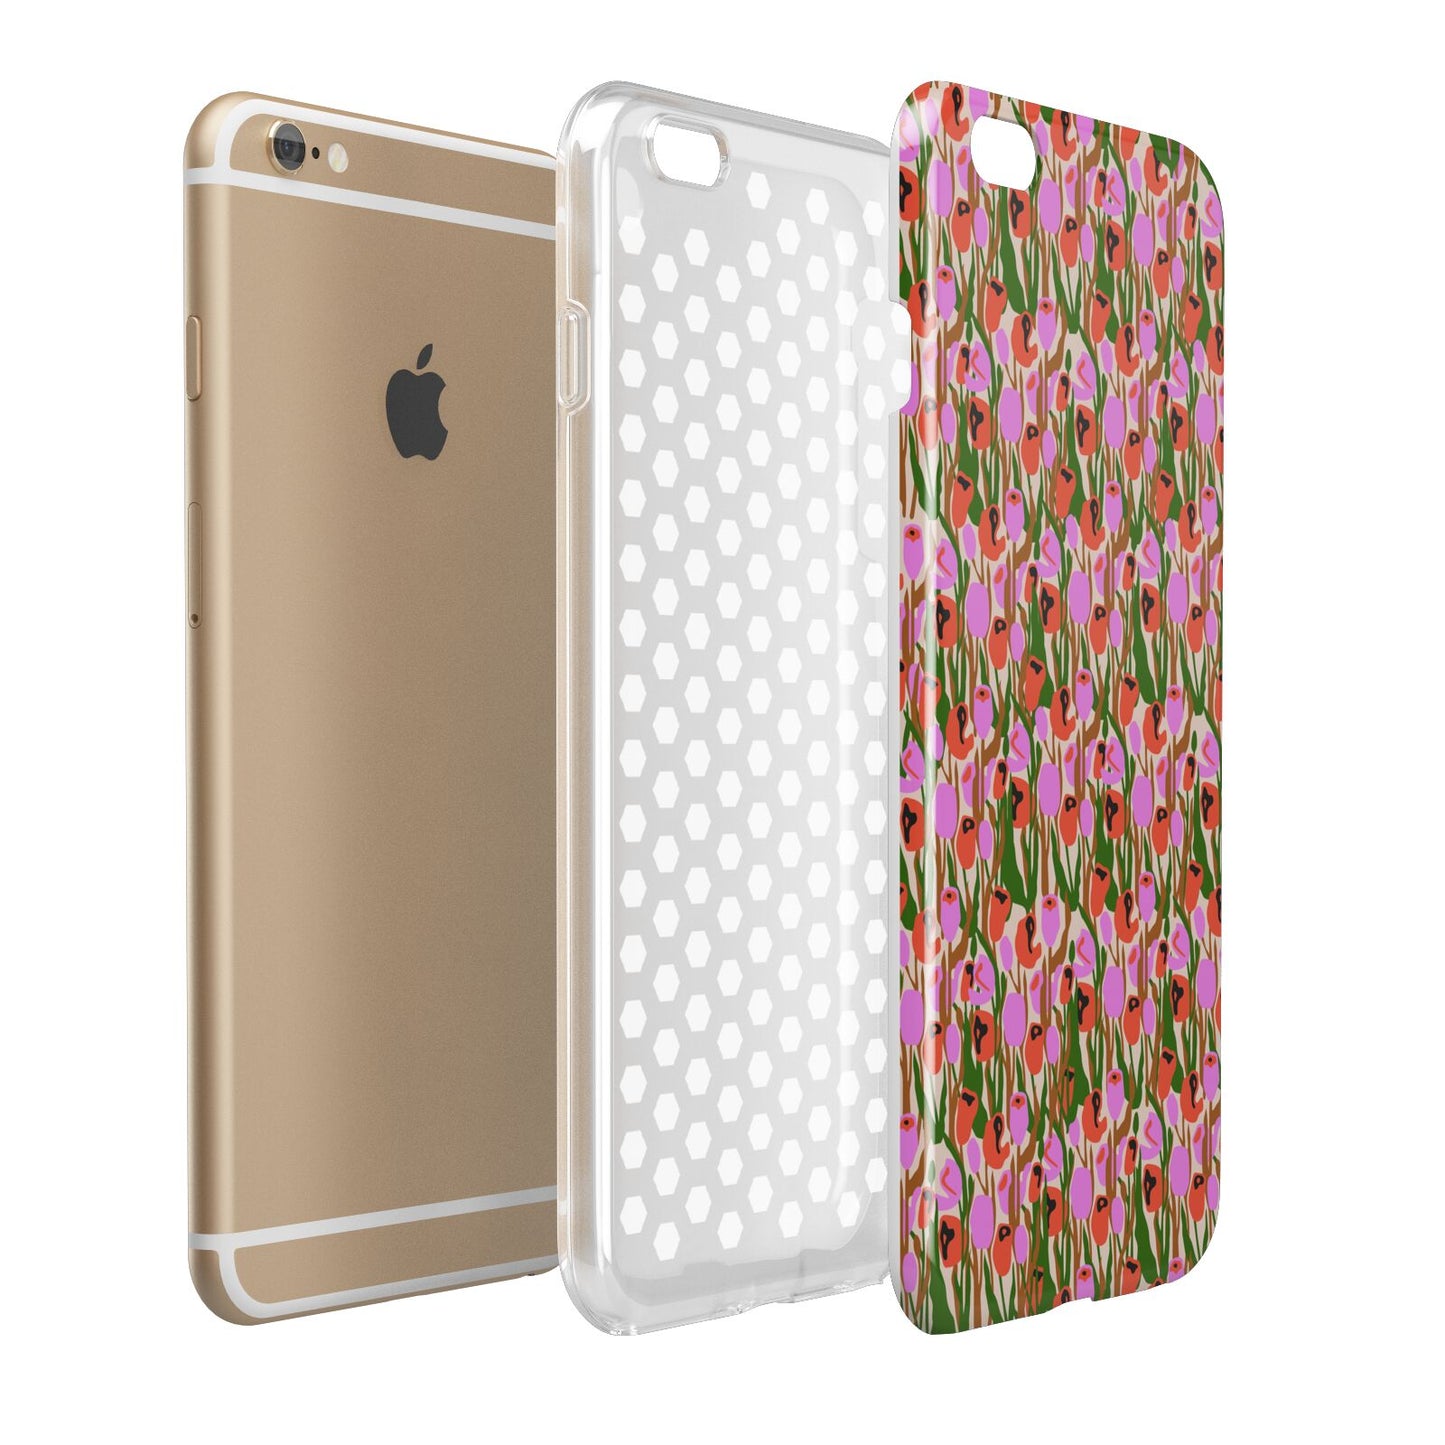 Floral Apple iPhone 6 Plus 3D Tough Case Expand Detail Image